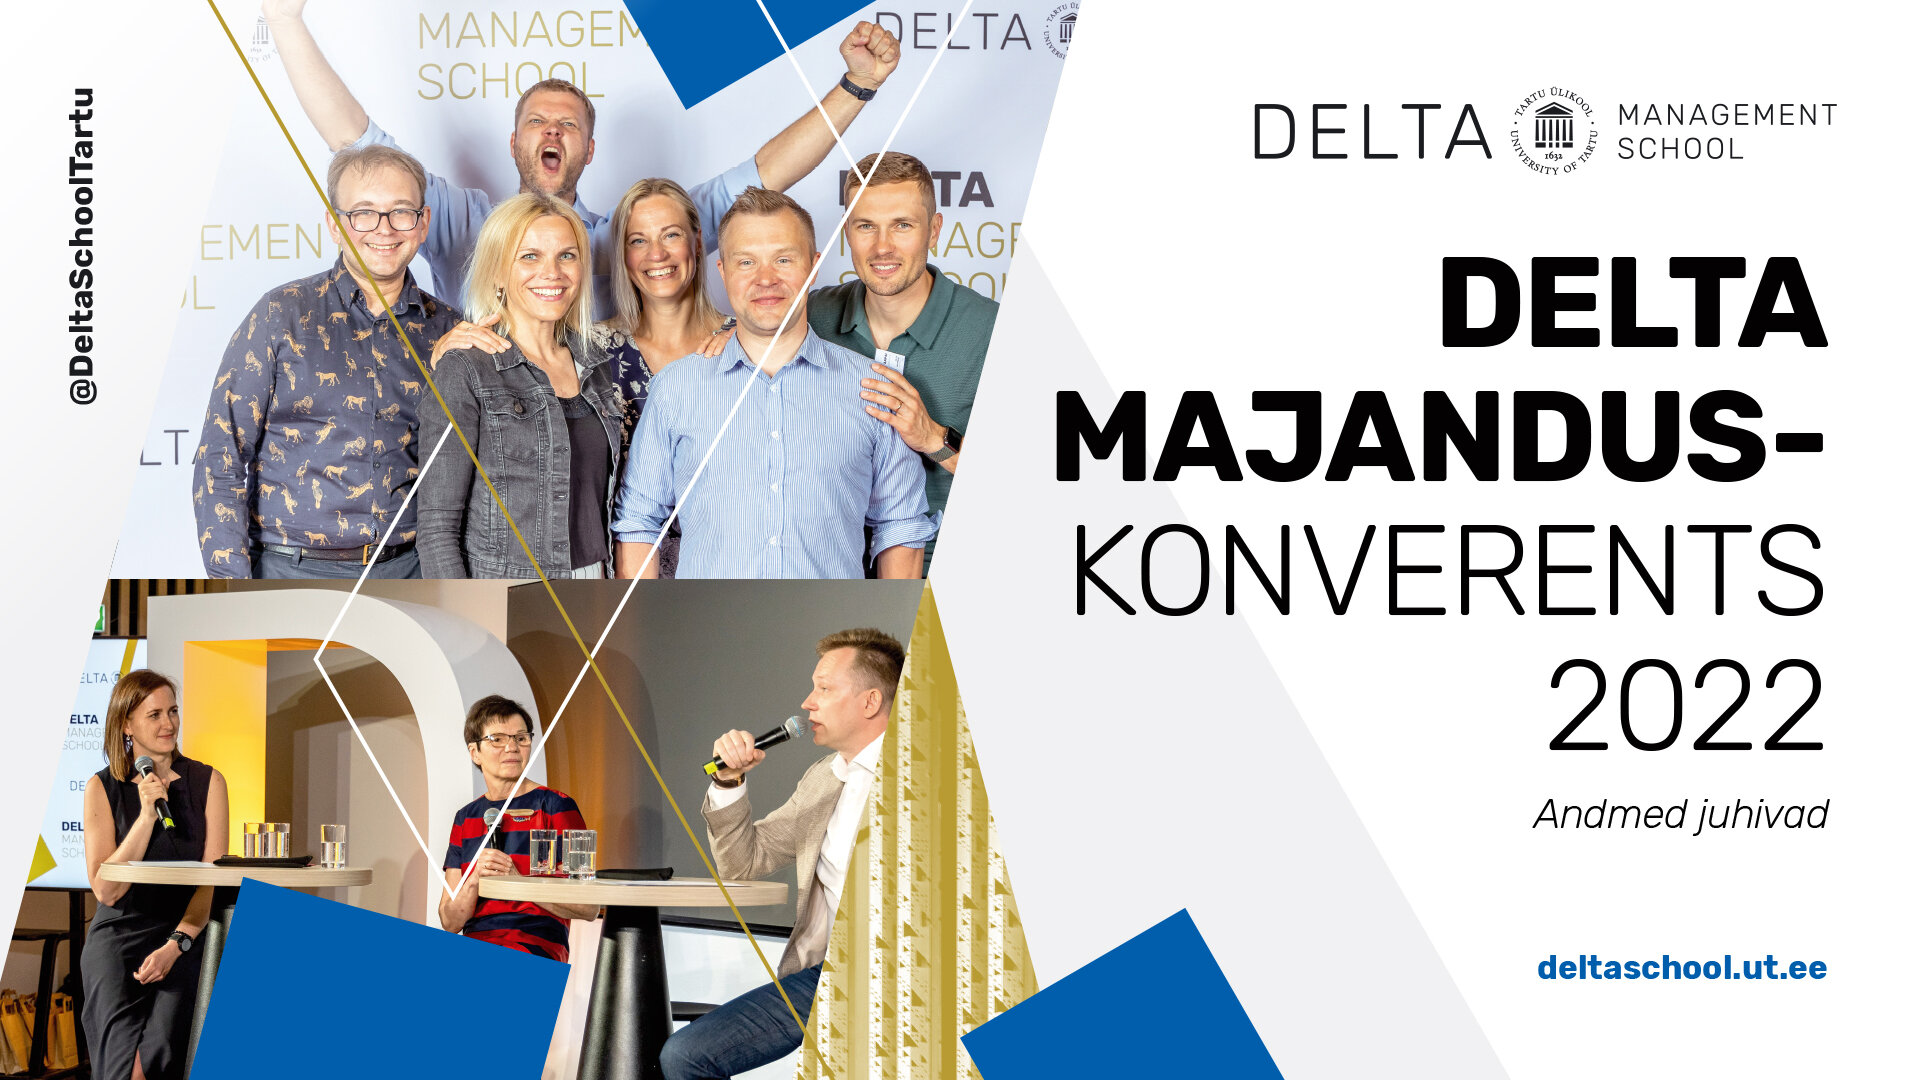 Delta majanduskonverents 2022 “Andmed juhivad”